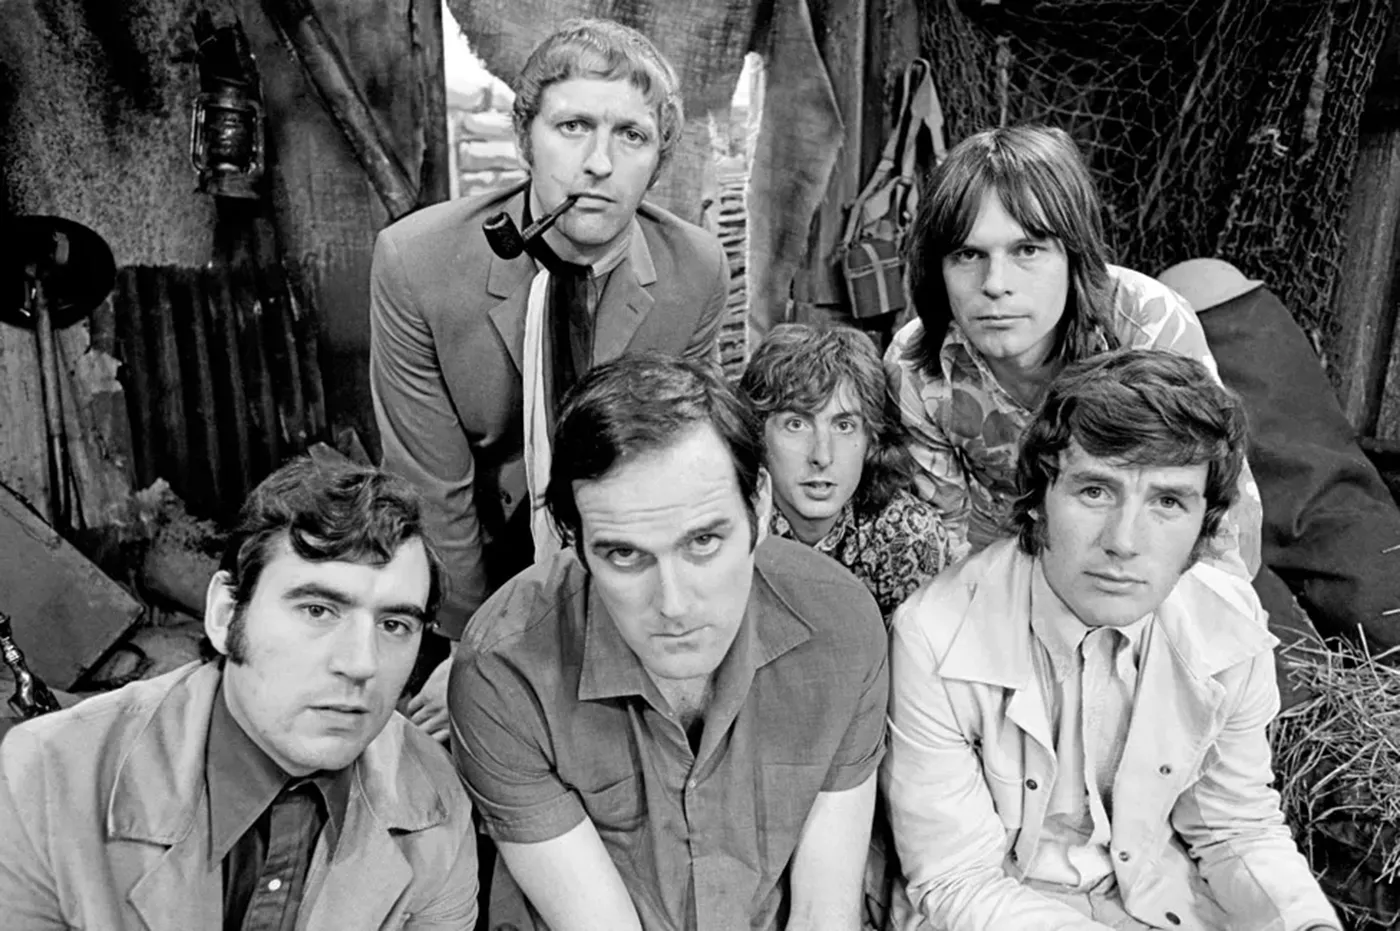 Un dels temes més recurrents als tanarotis del Regne Unit és 'Always look on the bright side of life' dels Monty Python